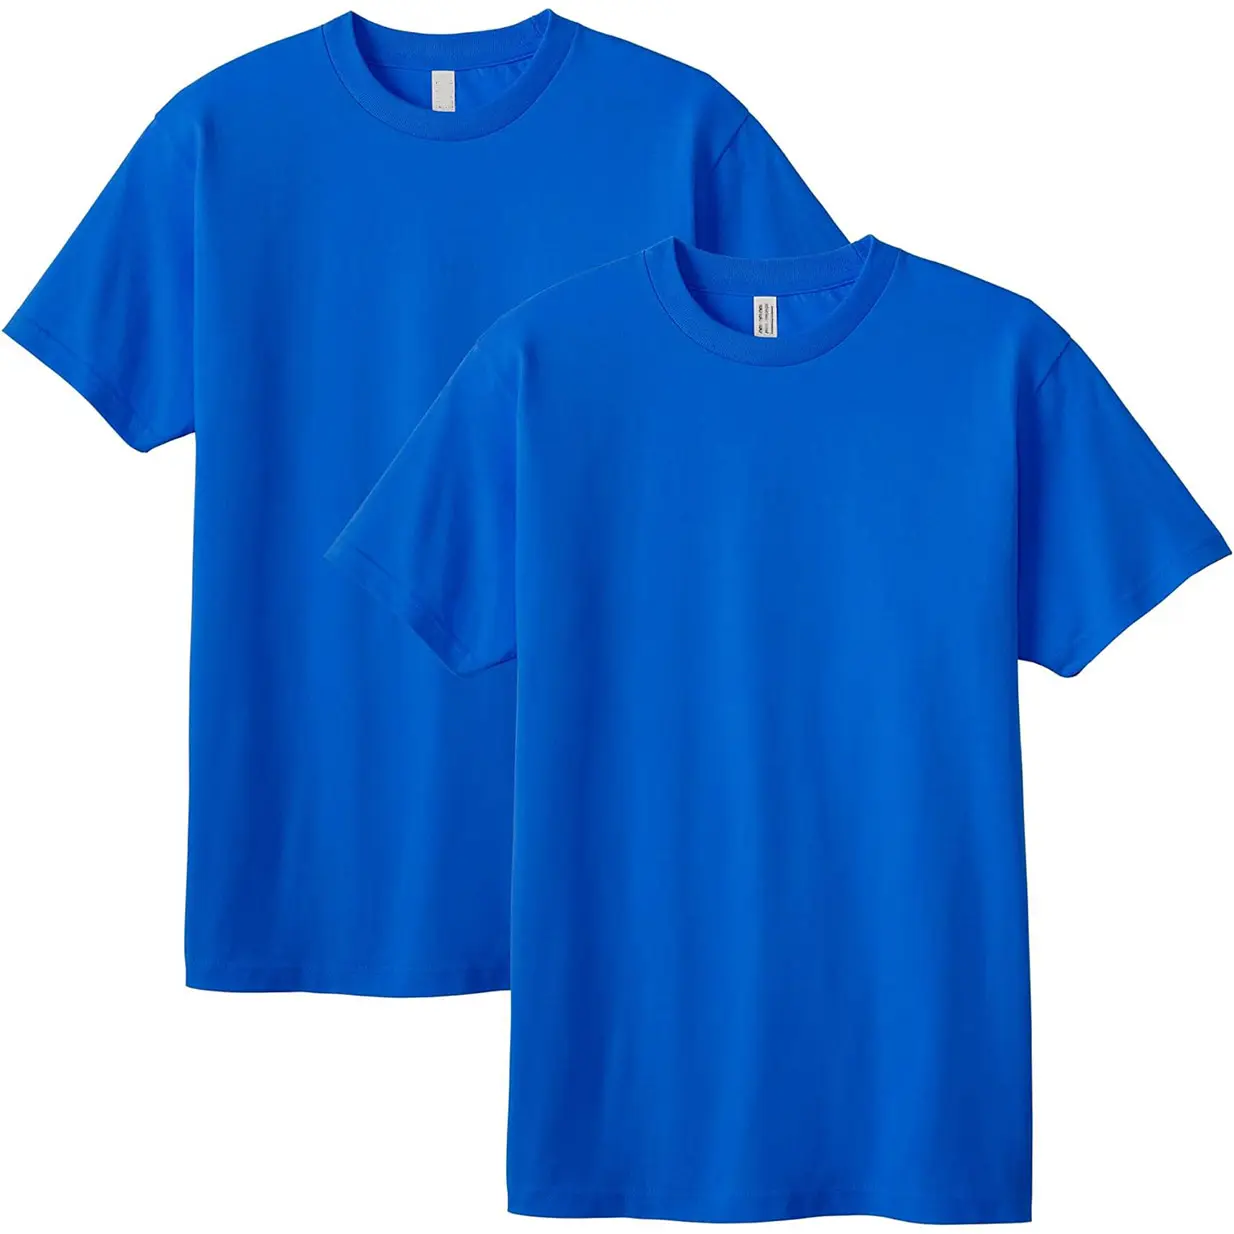 Camiseta masculina 100% algodão com estampa de logotipo personalizado, amostra grátis, camiseta polo personalizada em branco para homens, camisetas da moda da marca Expanza ind.